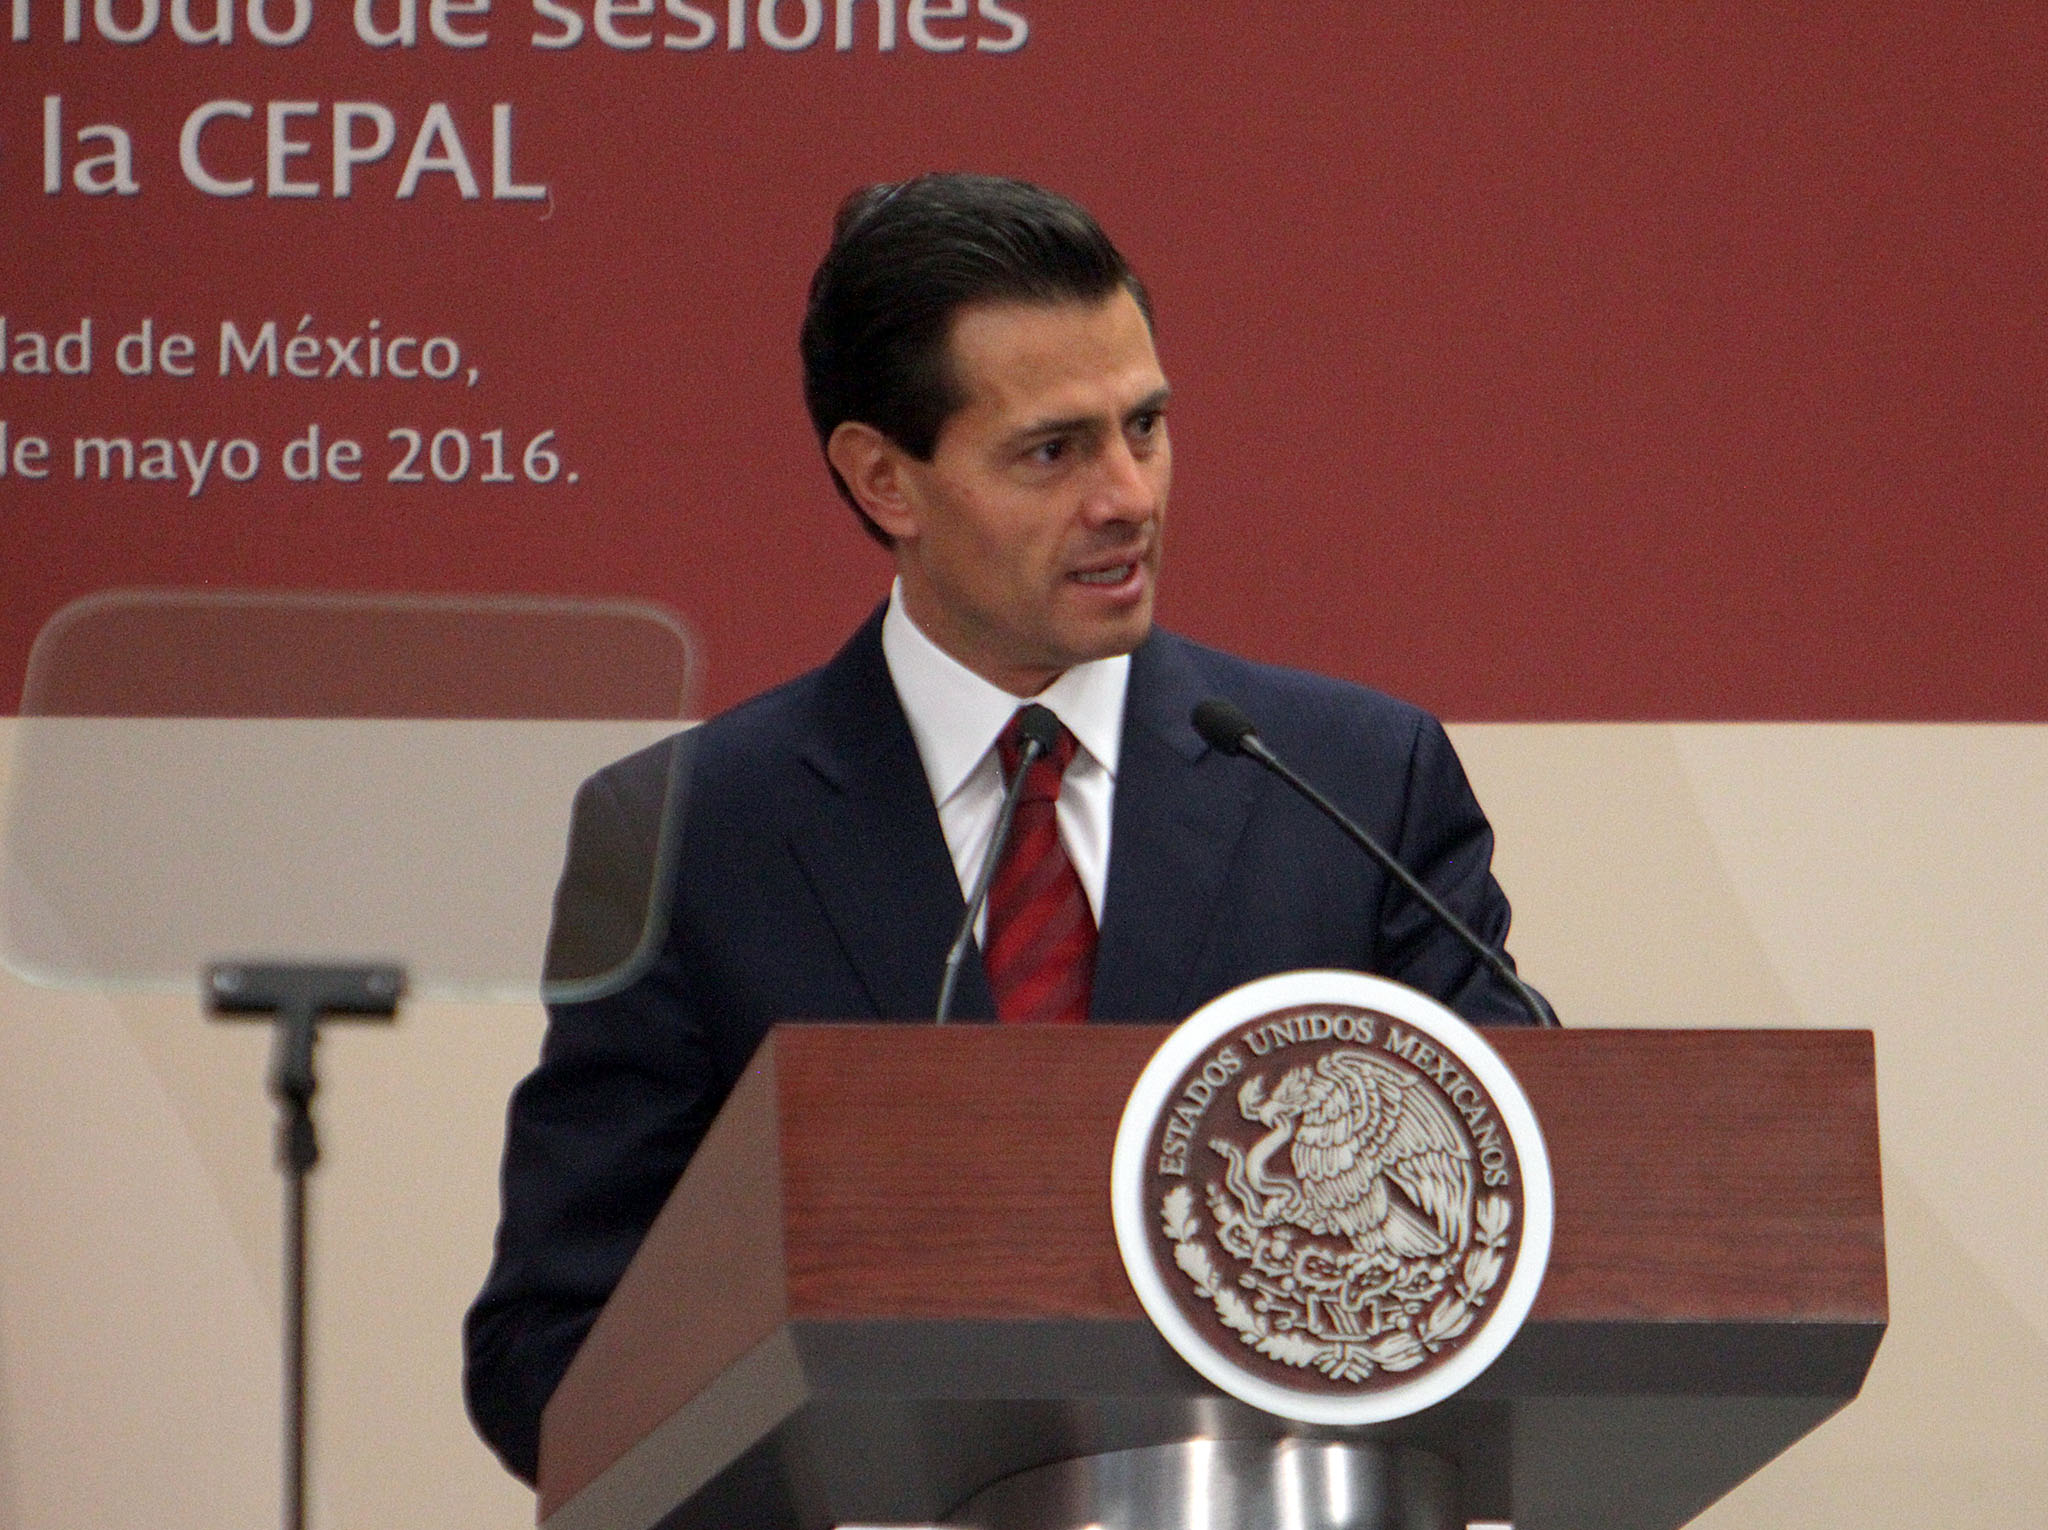 Lic. Enrique Peña Nieto, Presidente de los Estados Unidos Mexicanos.